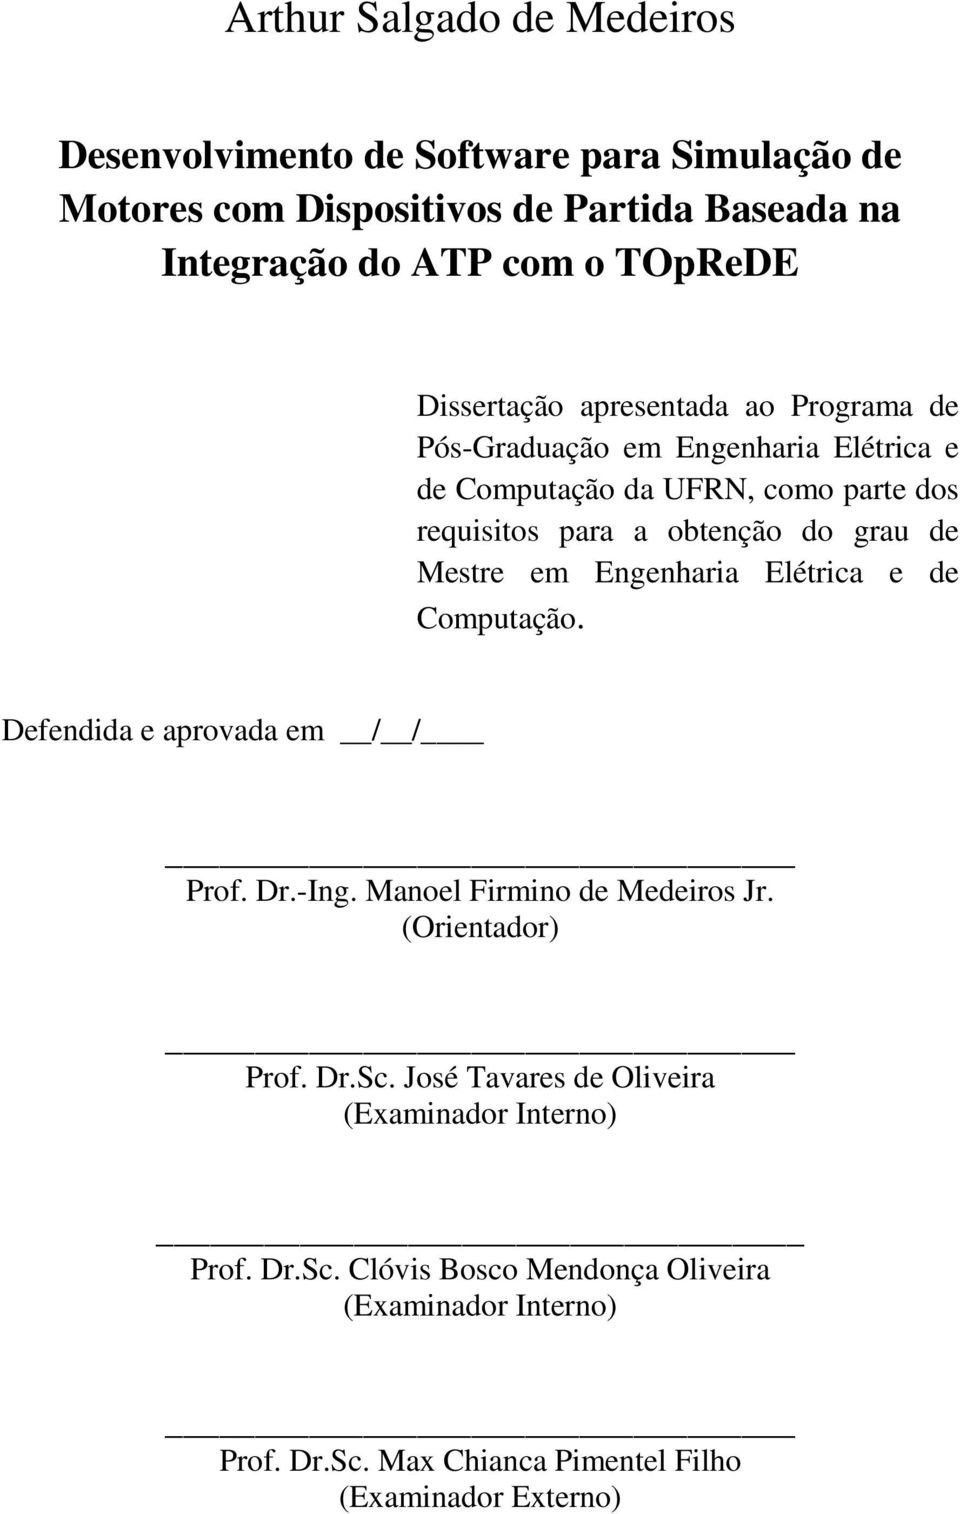 Mestre em Engenharia Elétrica e de Computação. Defendida e aprovada em / / Prof. Dr.-Ing. Manoel Firmino de Medeiros Jr. (Orientador) Prof. Dr.Sc.